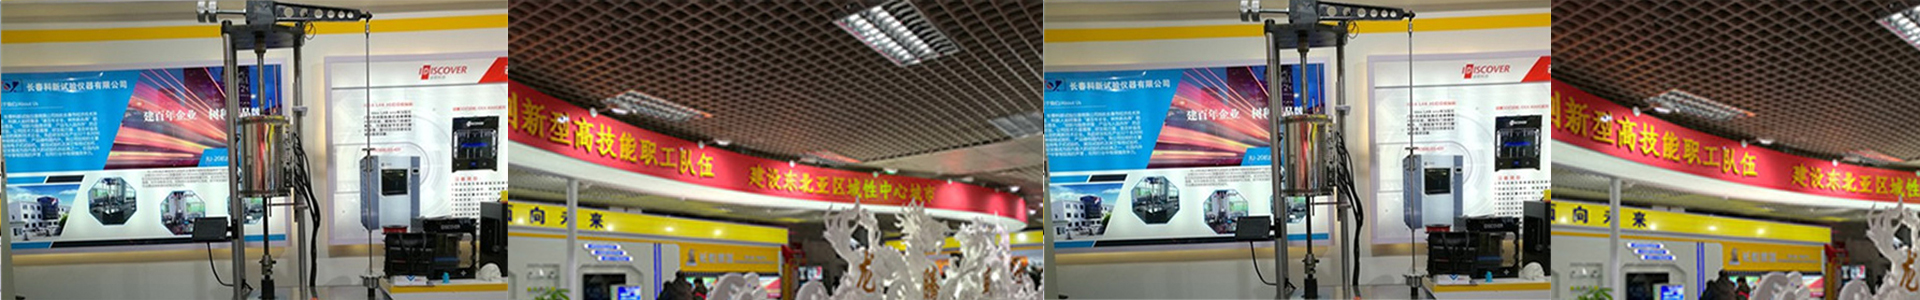 新闻中心banner